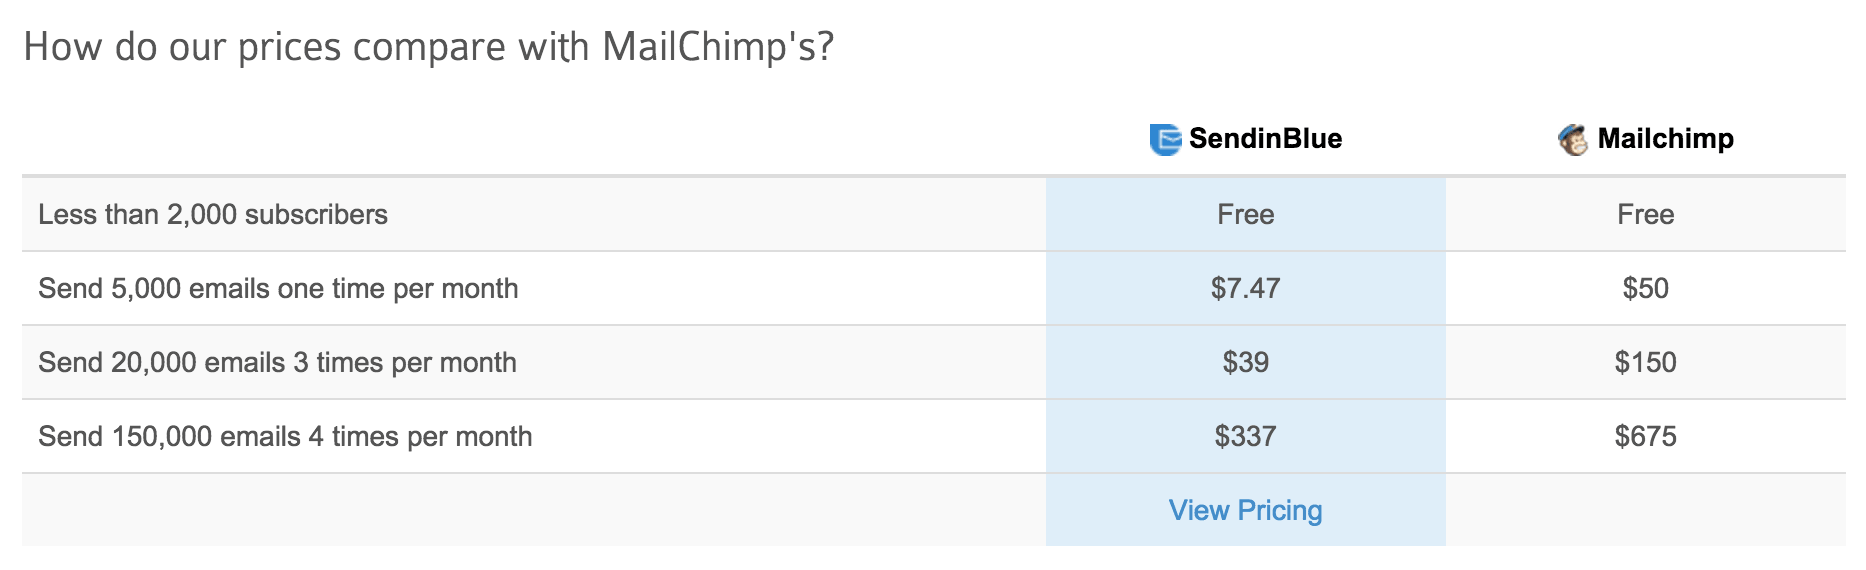 SendinBlue pricing versus MailChimp